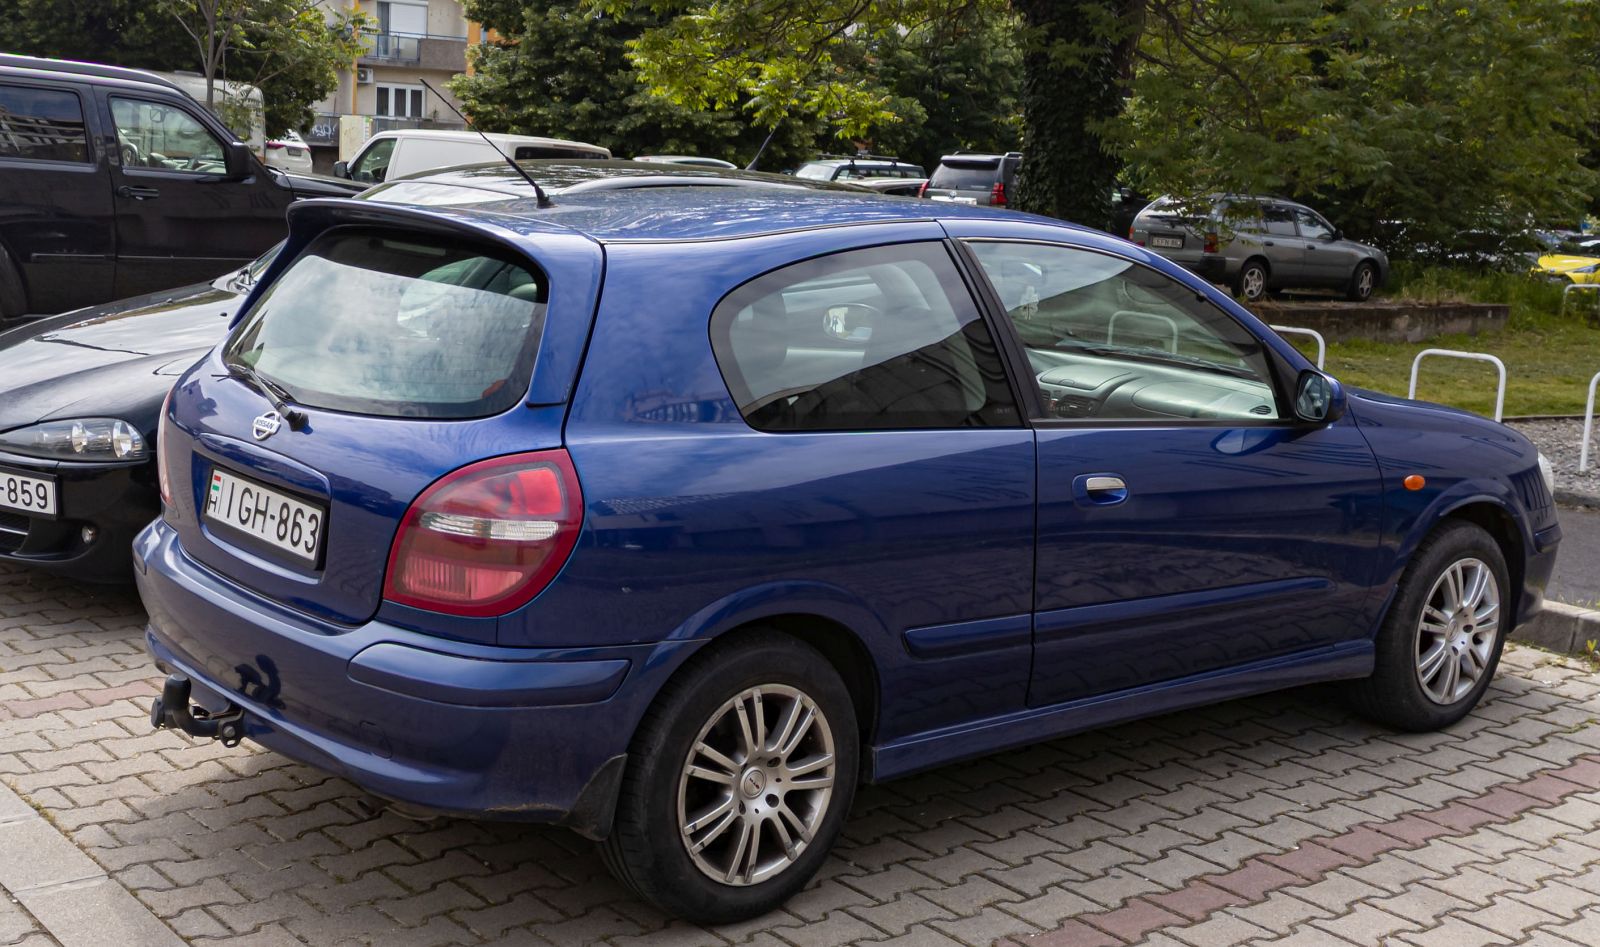 Rückansicht: Dreitürer Nissan Almera N16 (zweite Generation) in der Farbe Mystic Blau (Cadbury Blue) Foto. 05.2023.